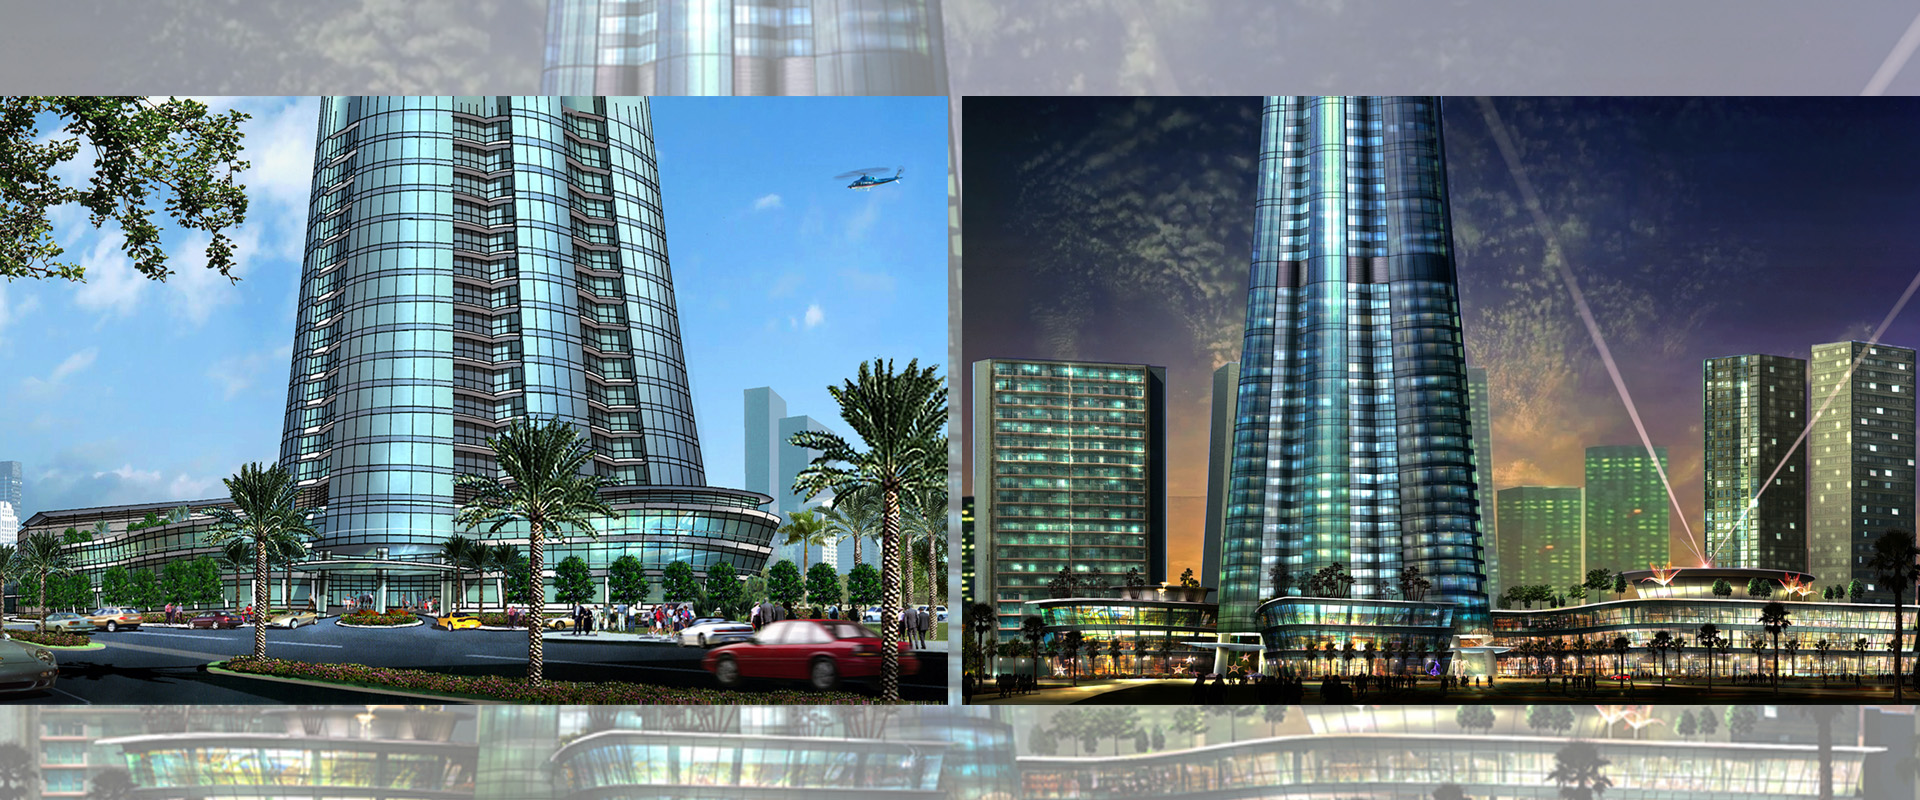 这座108层混合用途的塔楼将位于迪拜未来的主要商业飞地，以纤细芦苇从周边中等高度聚集物群中拔地而起表达有机设计的理念